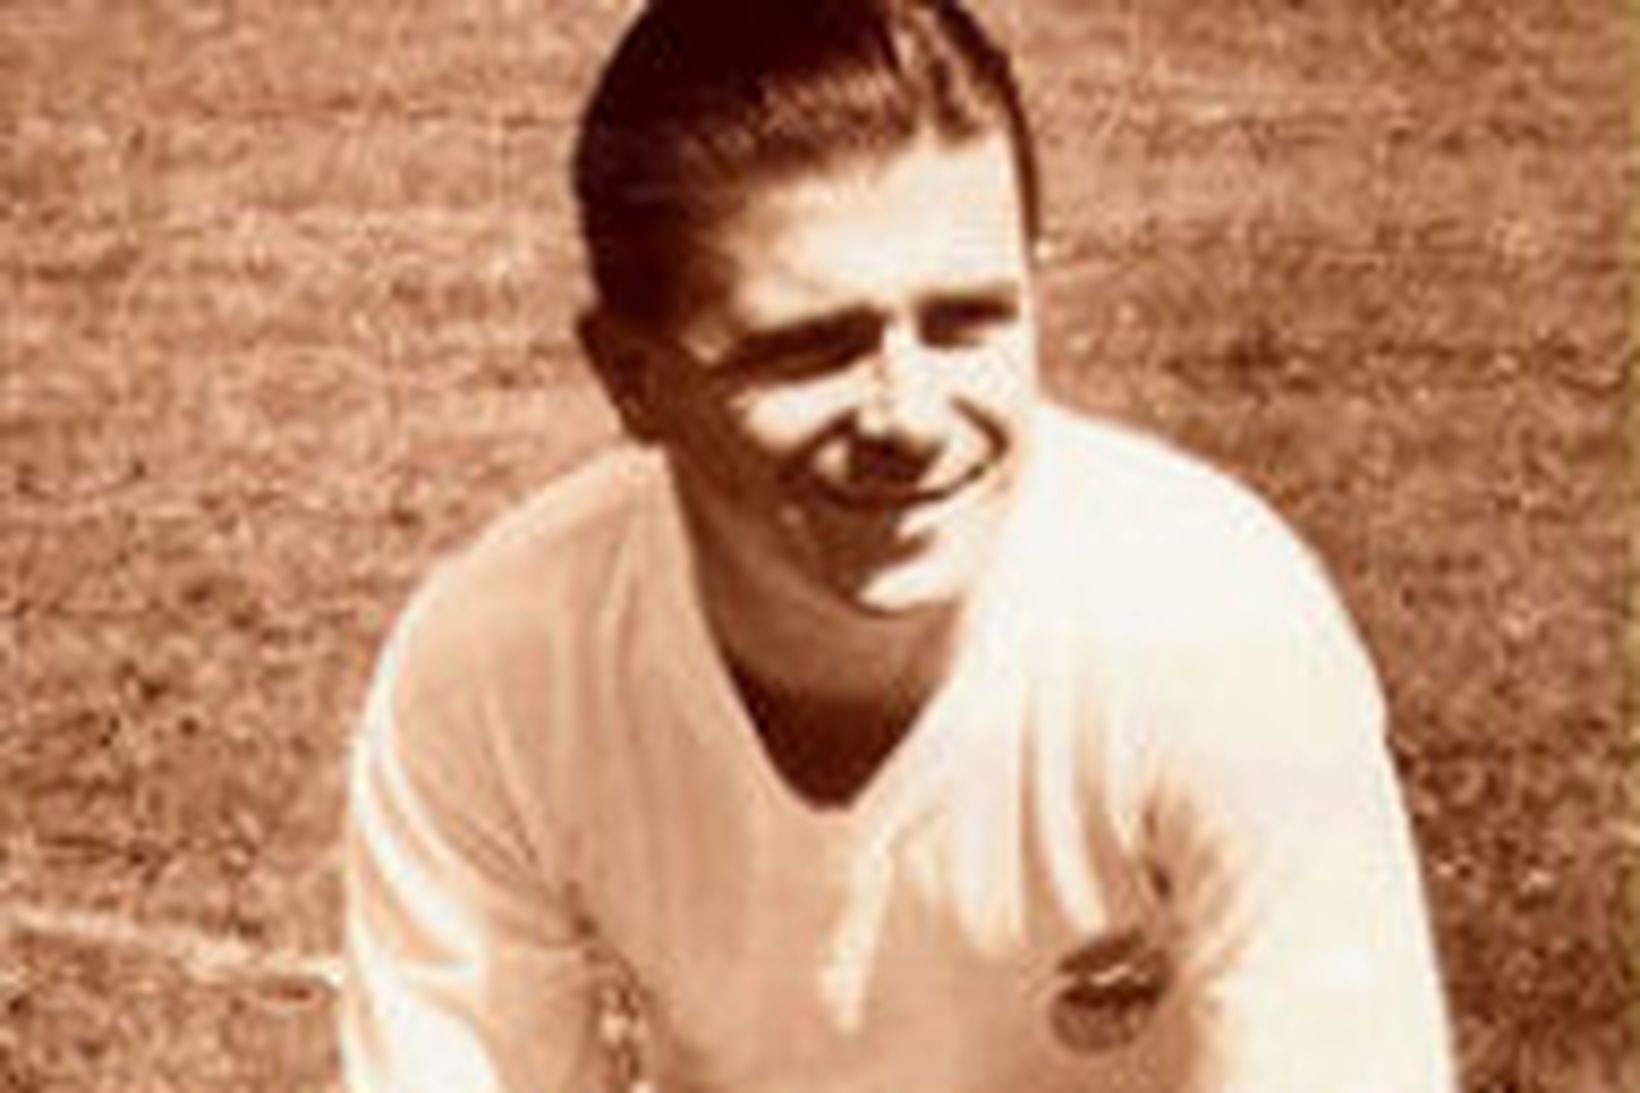 Ferenc Puskas, stjarna Ungverja sem töpuðu fyrir Þjóðverjum 1954.